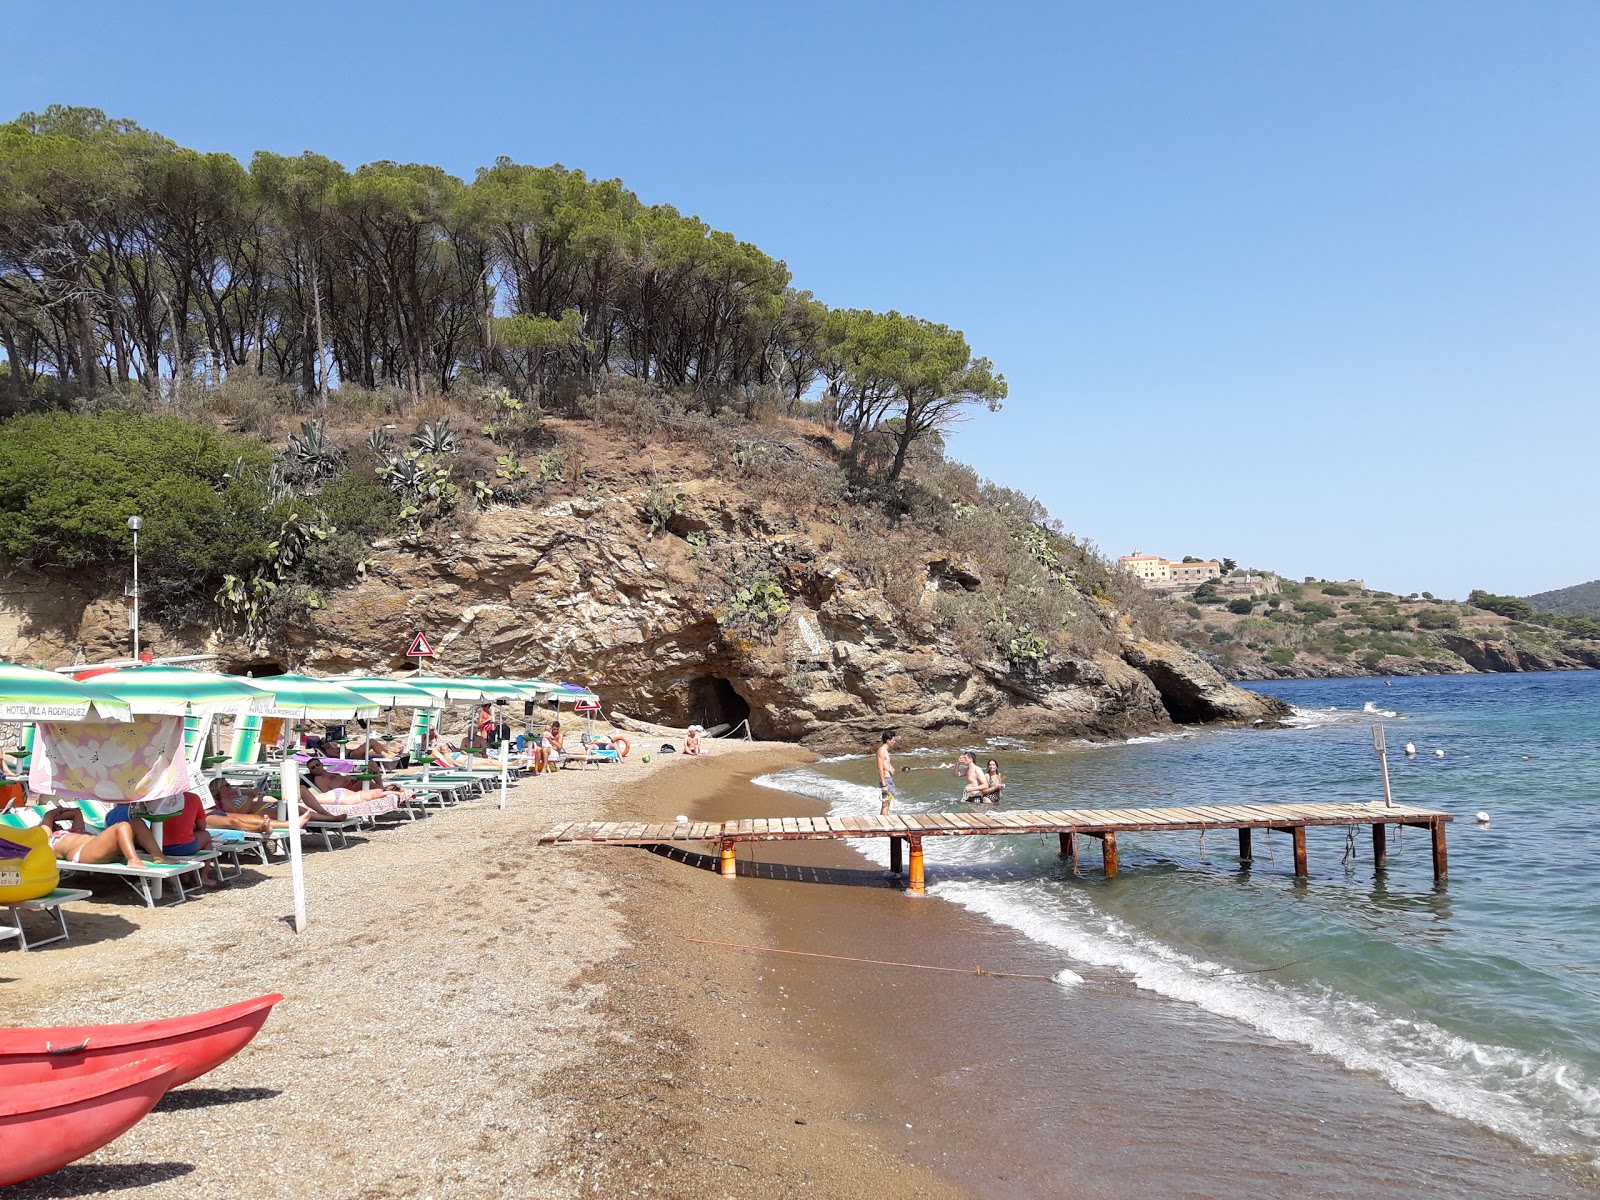 Zdjęcie Naregno beach z przestronna zatoka